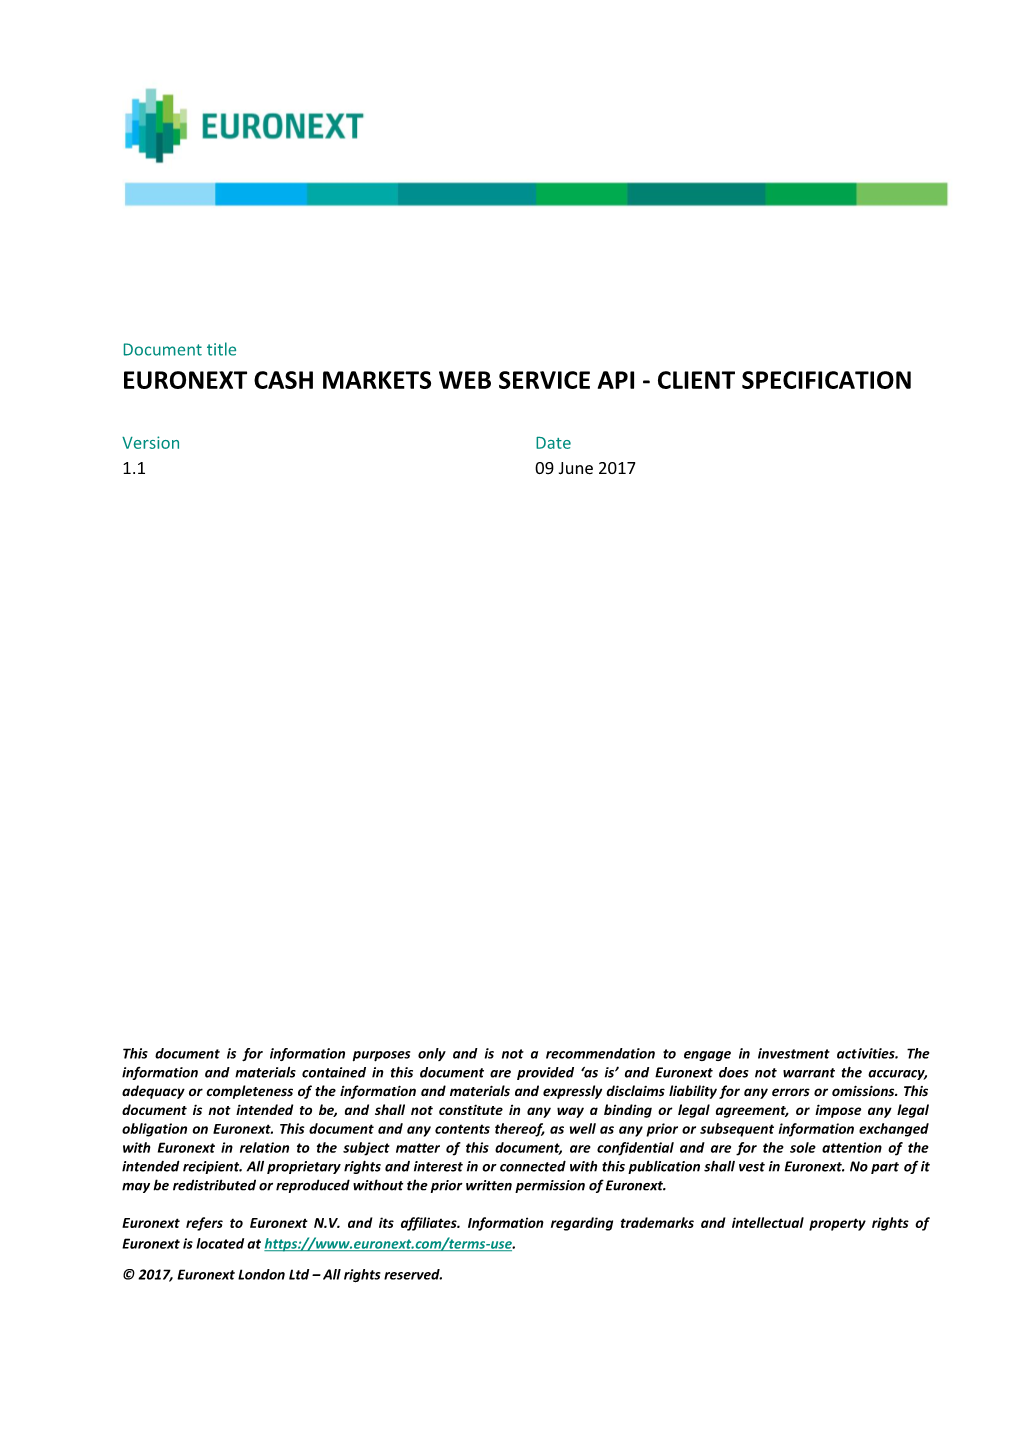 Euronext Cash Markets Web Service Api - Client Specification